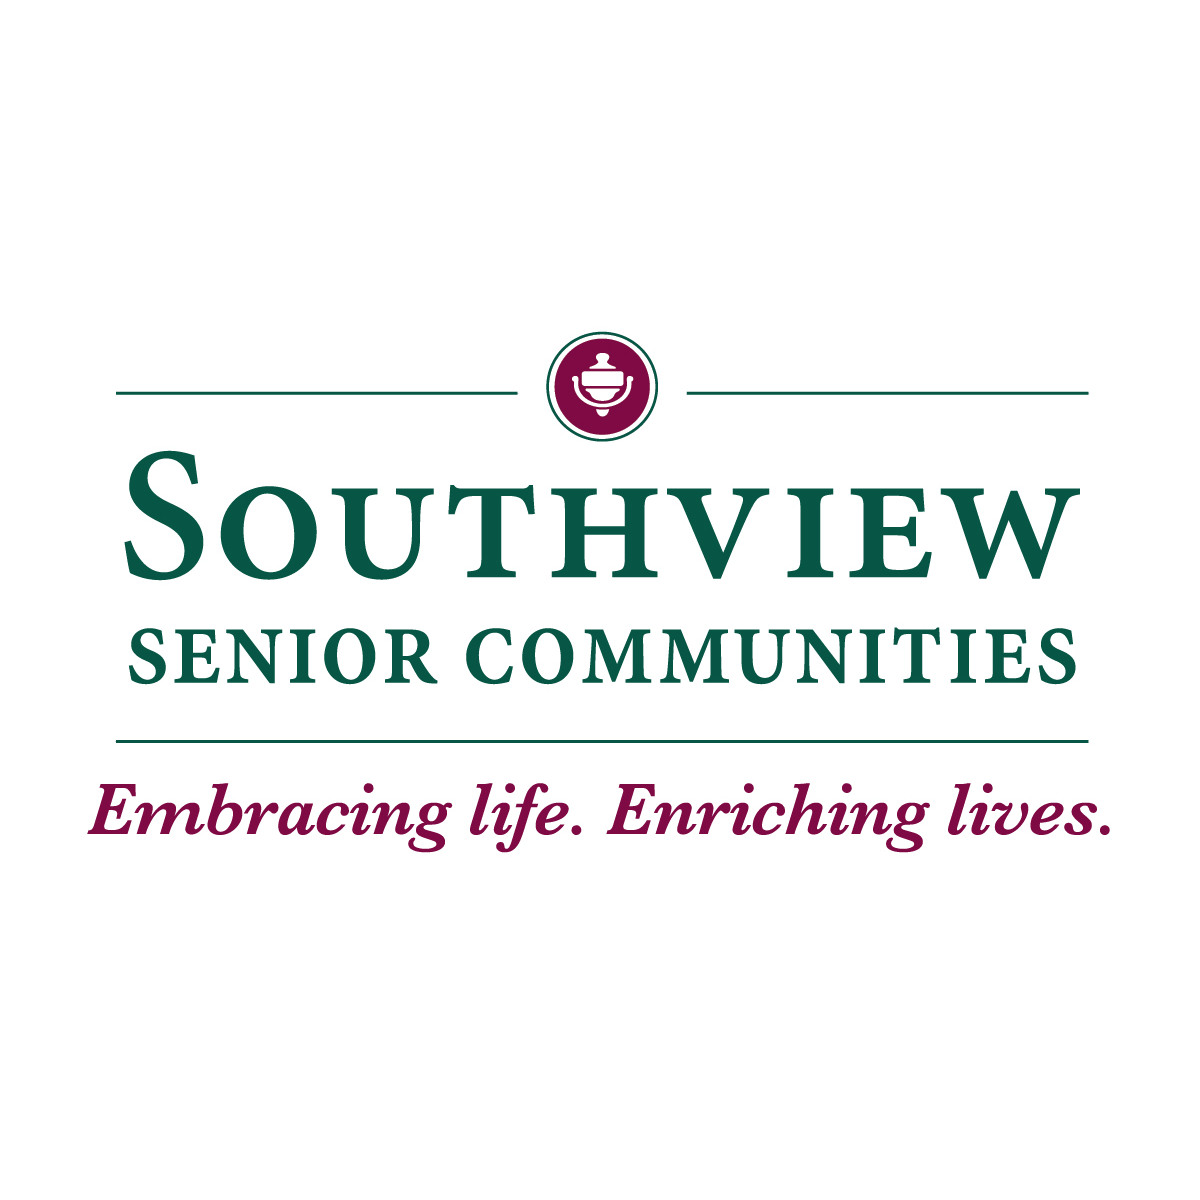 Southview Senior Communities St. Paul (651)454-4801